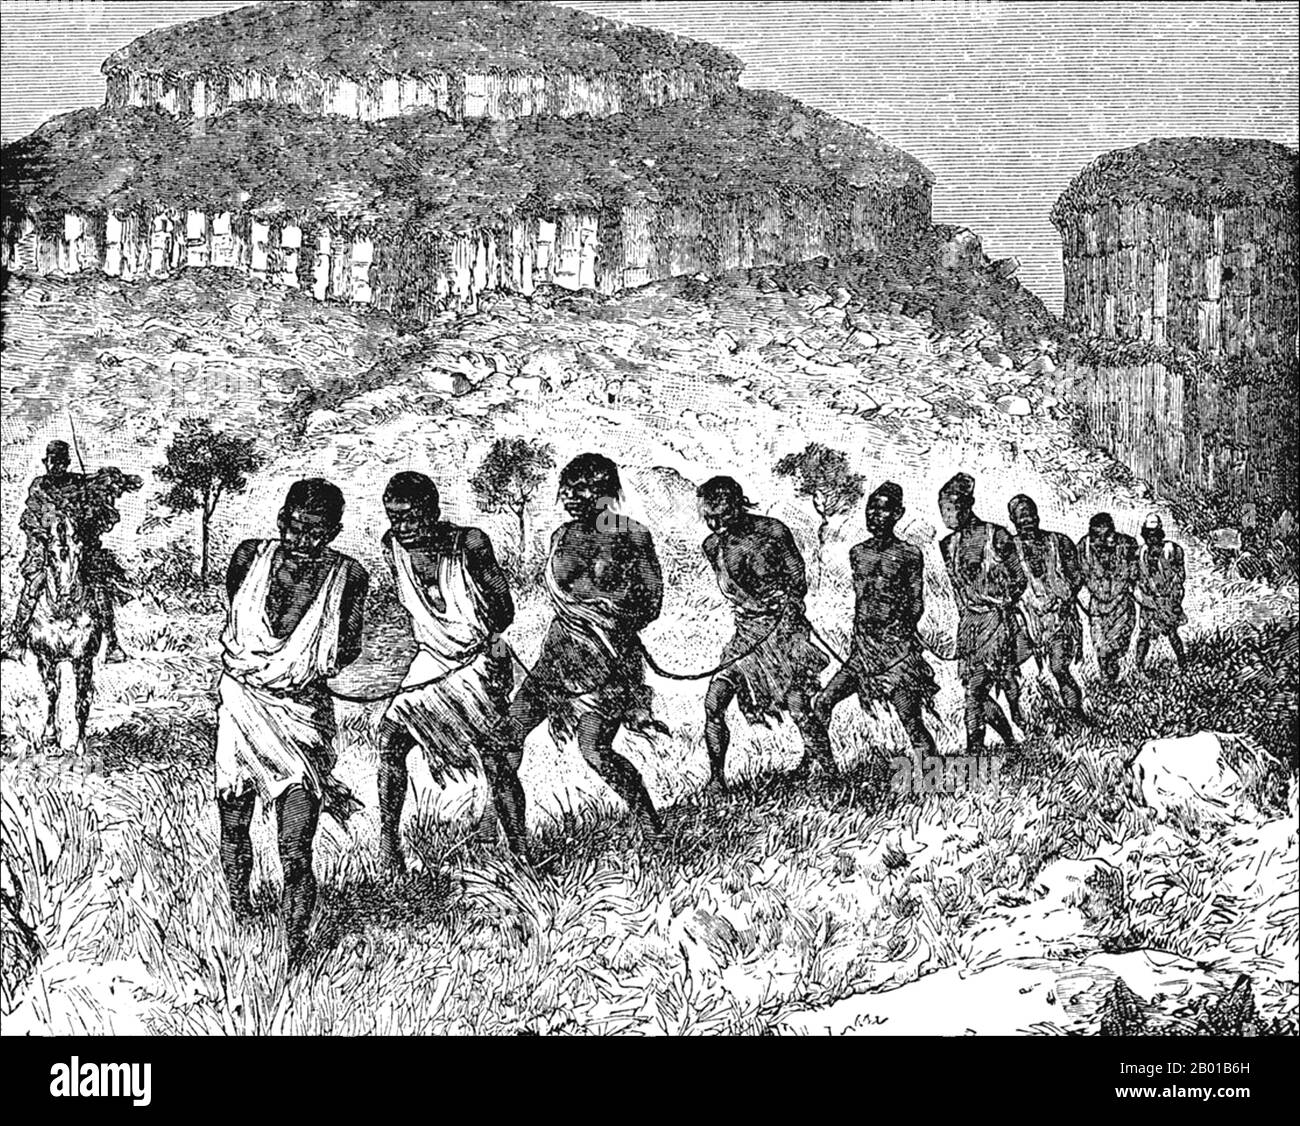 Senegambia/Afrique de l'Ouest: 'Le Mana-Oulè et la Caravane des esclaves'. Illustration de Joseph Simon Gallieni (24 avril 1849 - 27 mai 1916), 1879. Les esclaves noirs ont été importés dans le monde musulman d'Afrique par un certain nombre de routes vers le nord à travers le désert du Sahara, et par la mer vers l'Arabie et le golfe Persique. Les estimations du nombre de personnes concernées varient grandement, mais il semble qu'il y ait eu facilement 10 millions, peut-être même deux fois ce nombre. Les deux tiers des esclaves africains étaient des femmes, car les esclaves mâles étaient considérés comme gênants. Banque D'Images